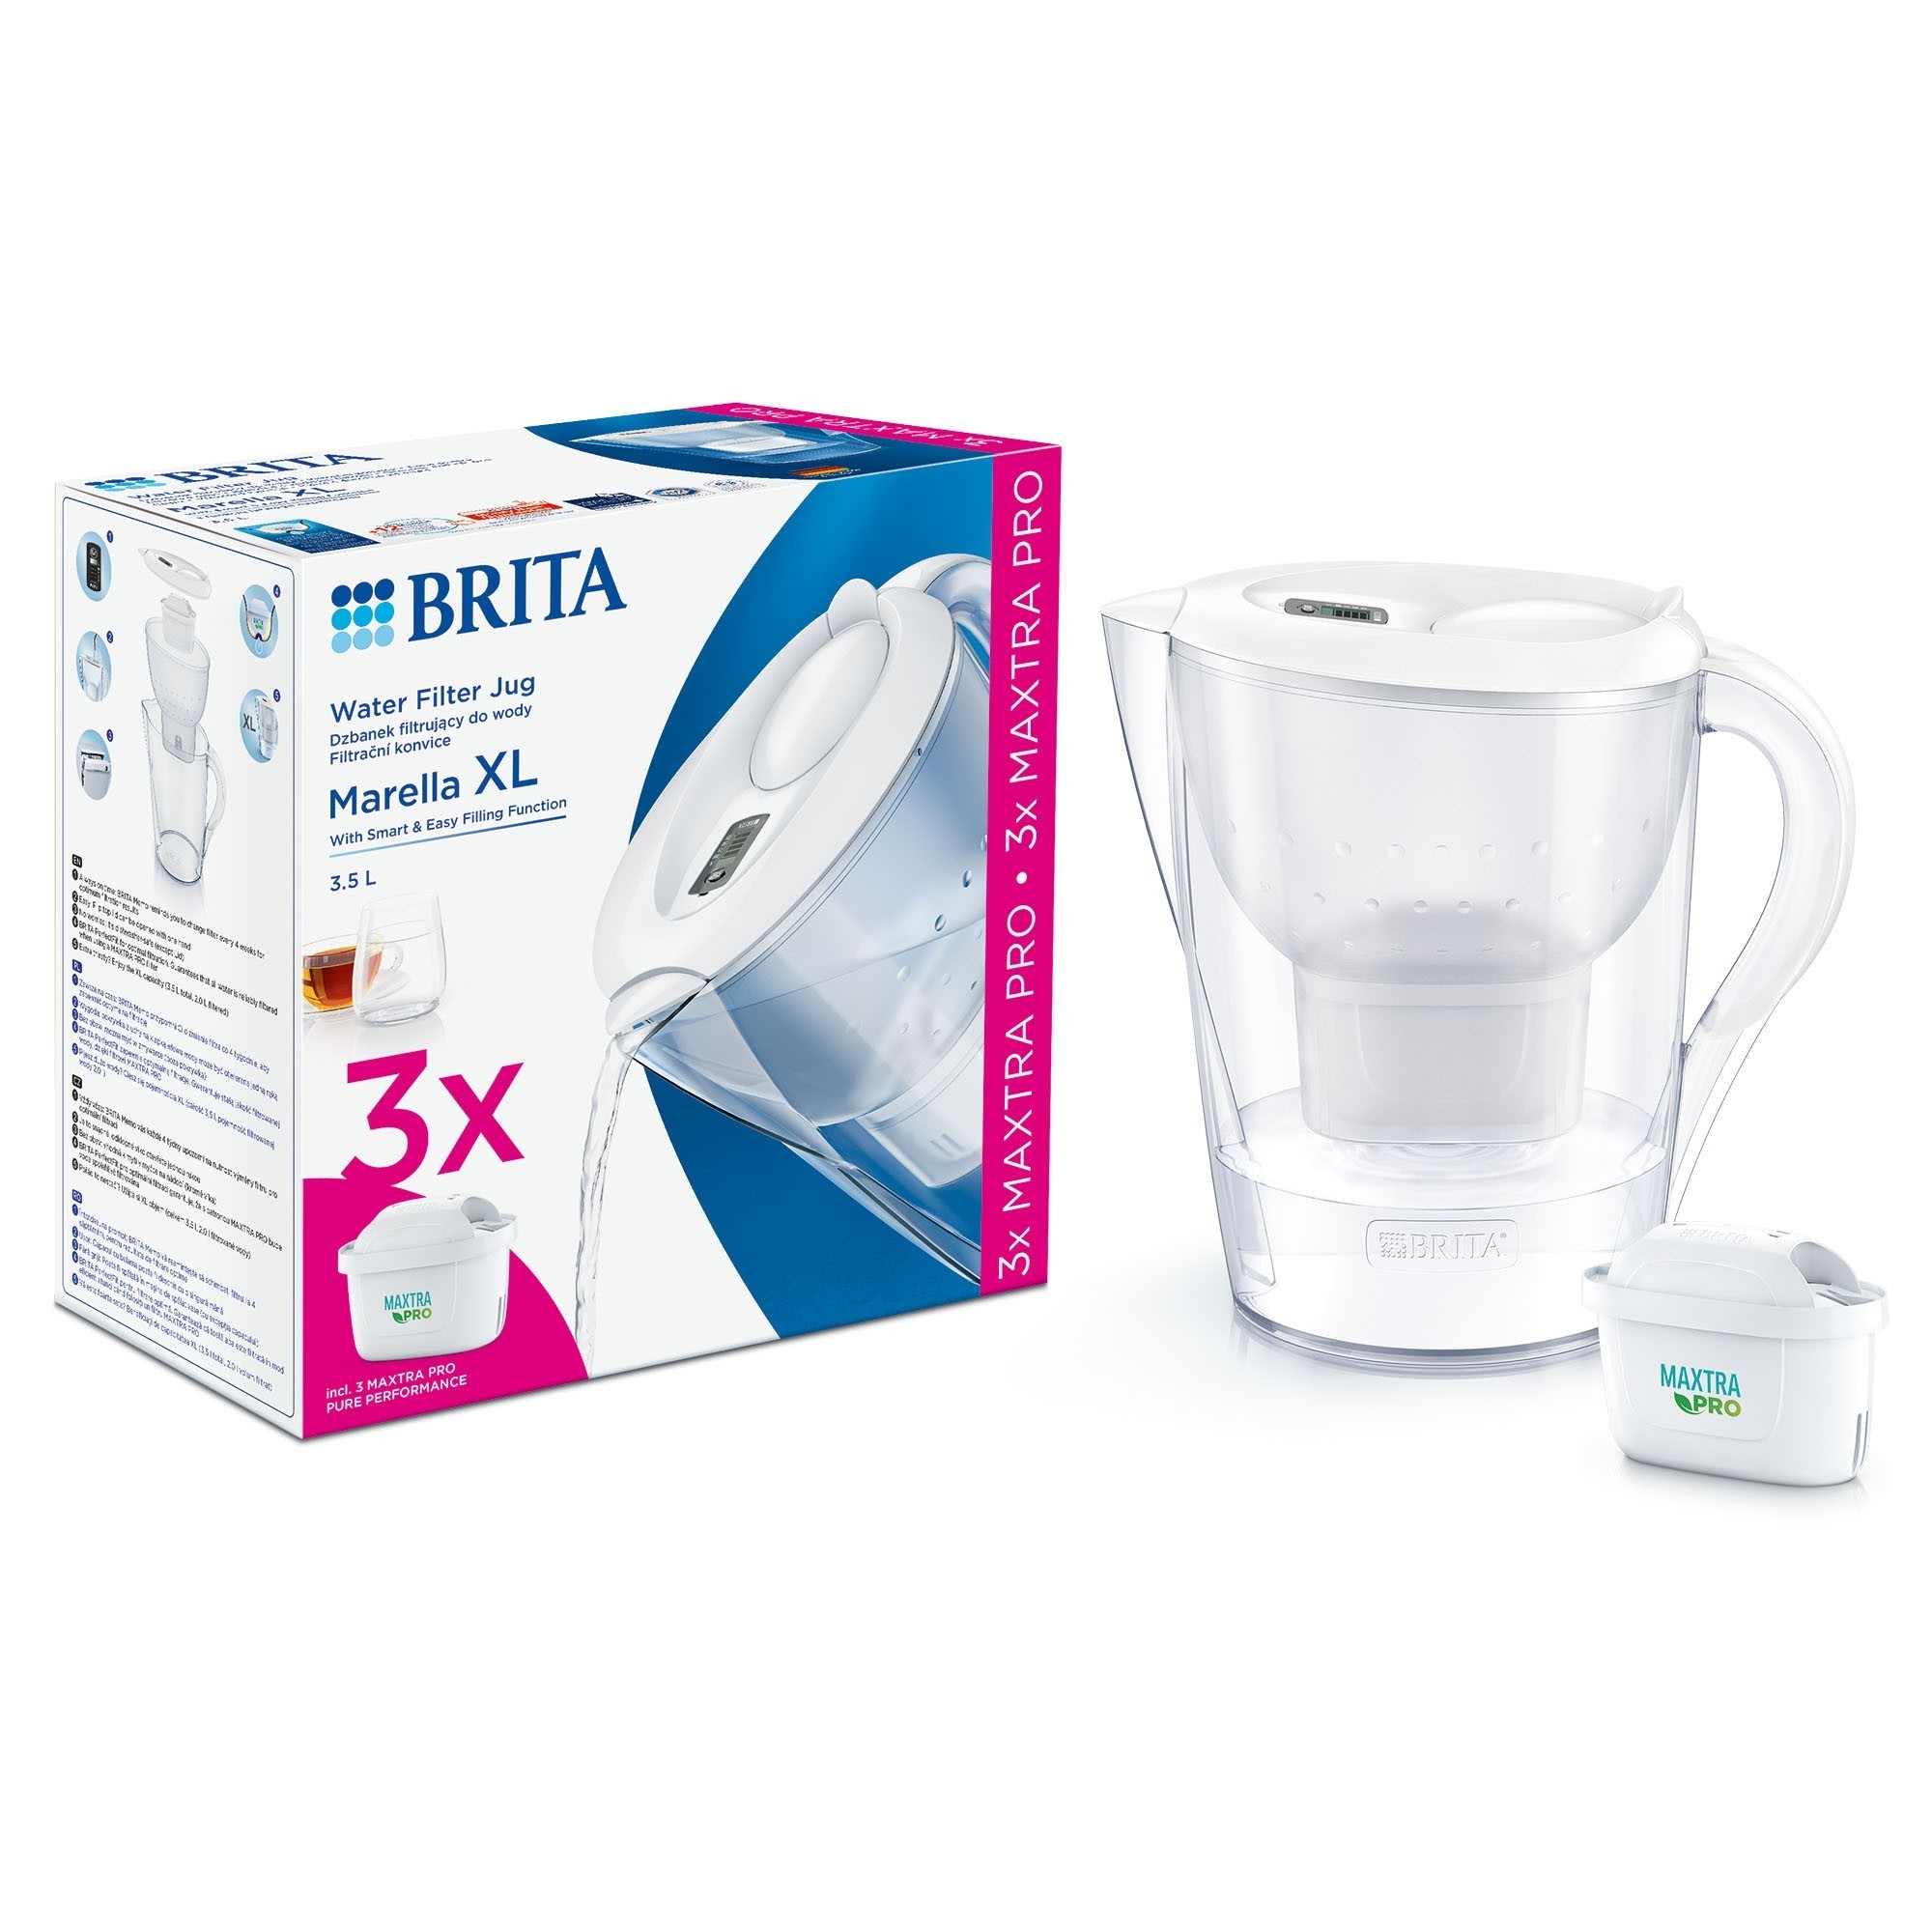 Paquete de inicio BRITA Marella XL 3.5 L + 3 filtros Maxtra PRO (blanco)